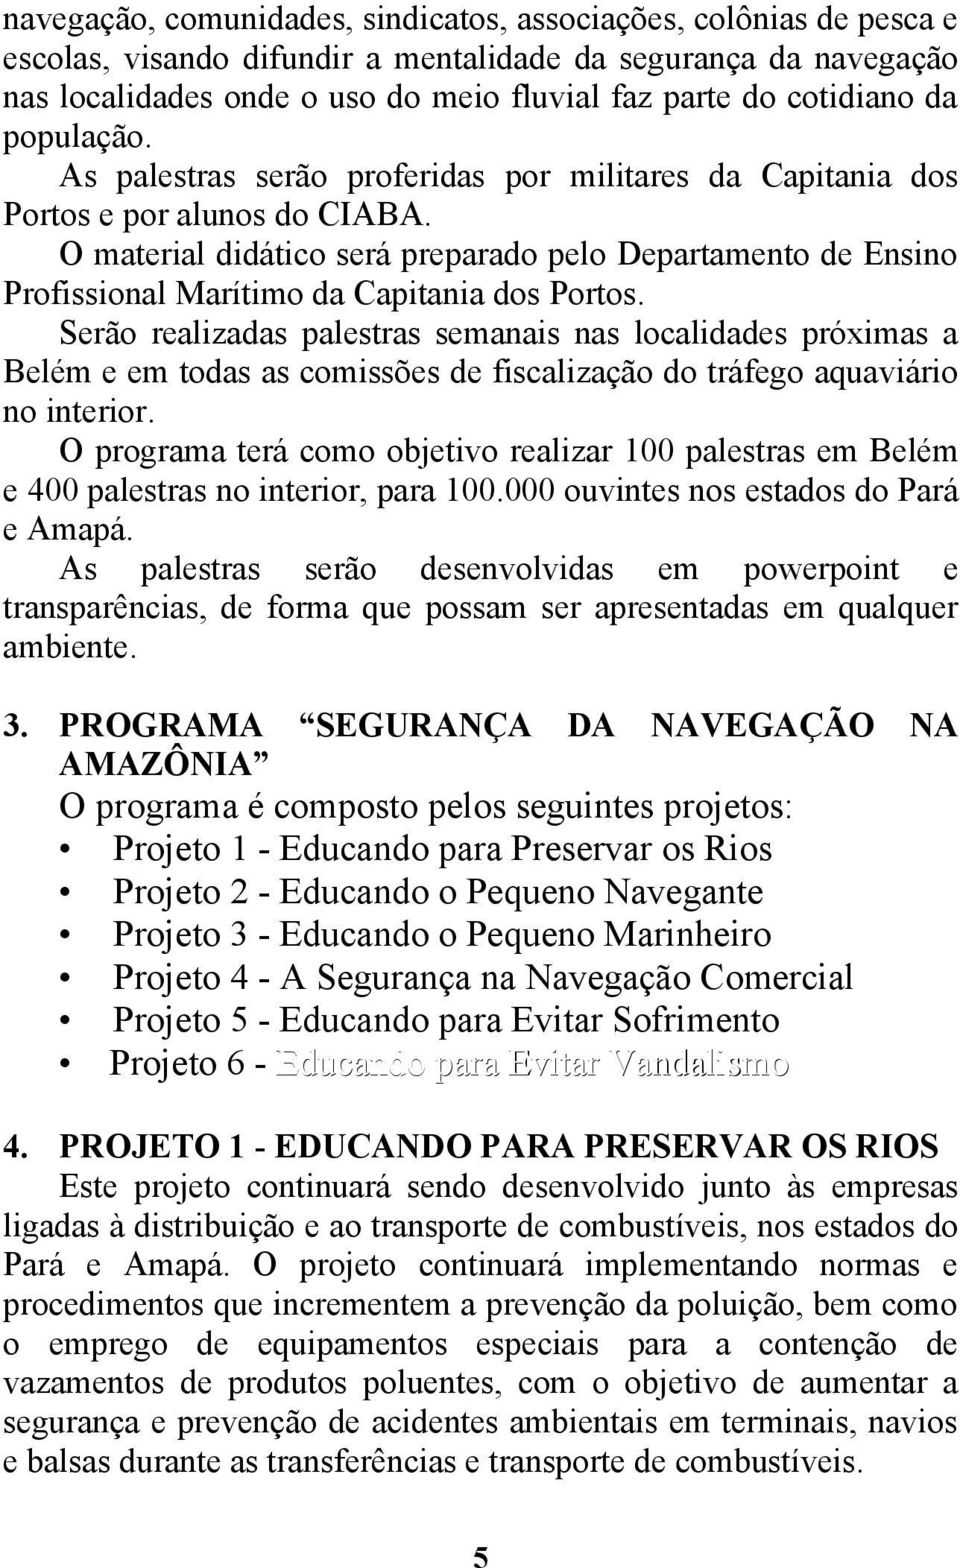 O material didático será preparado pelo Departamento de Ensino Profissional Marítimo da Capitania dos Portos.